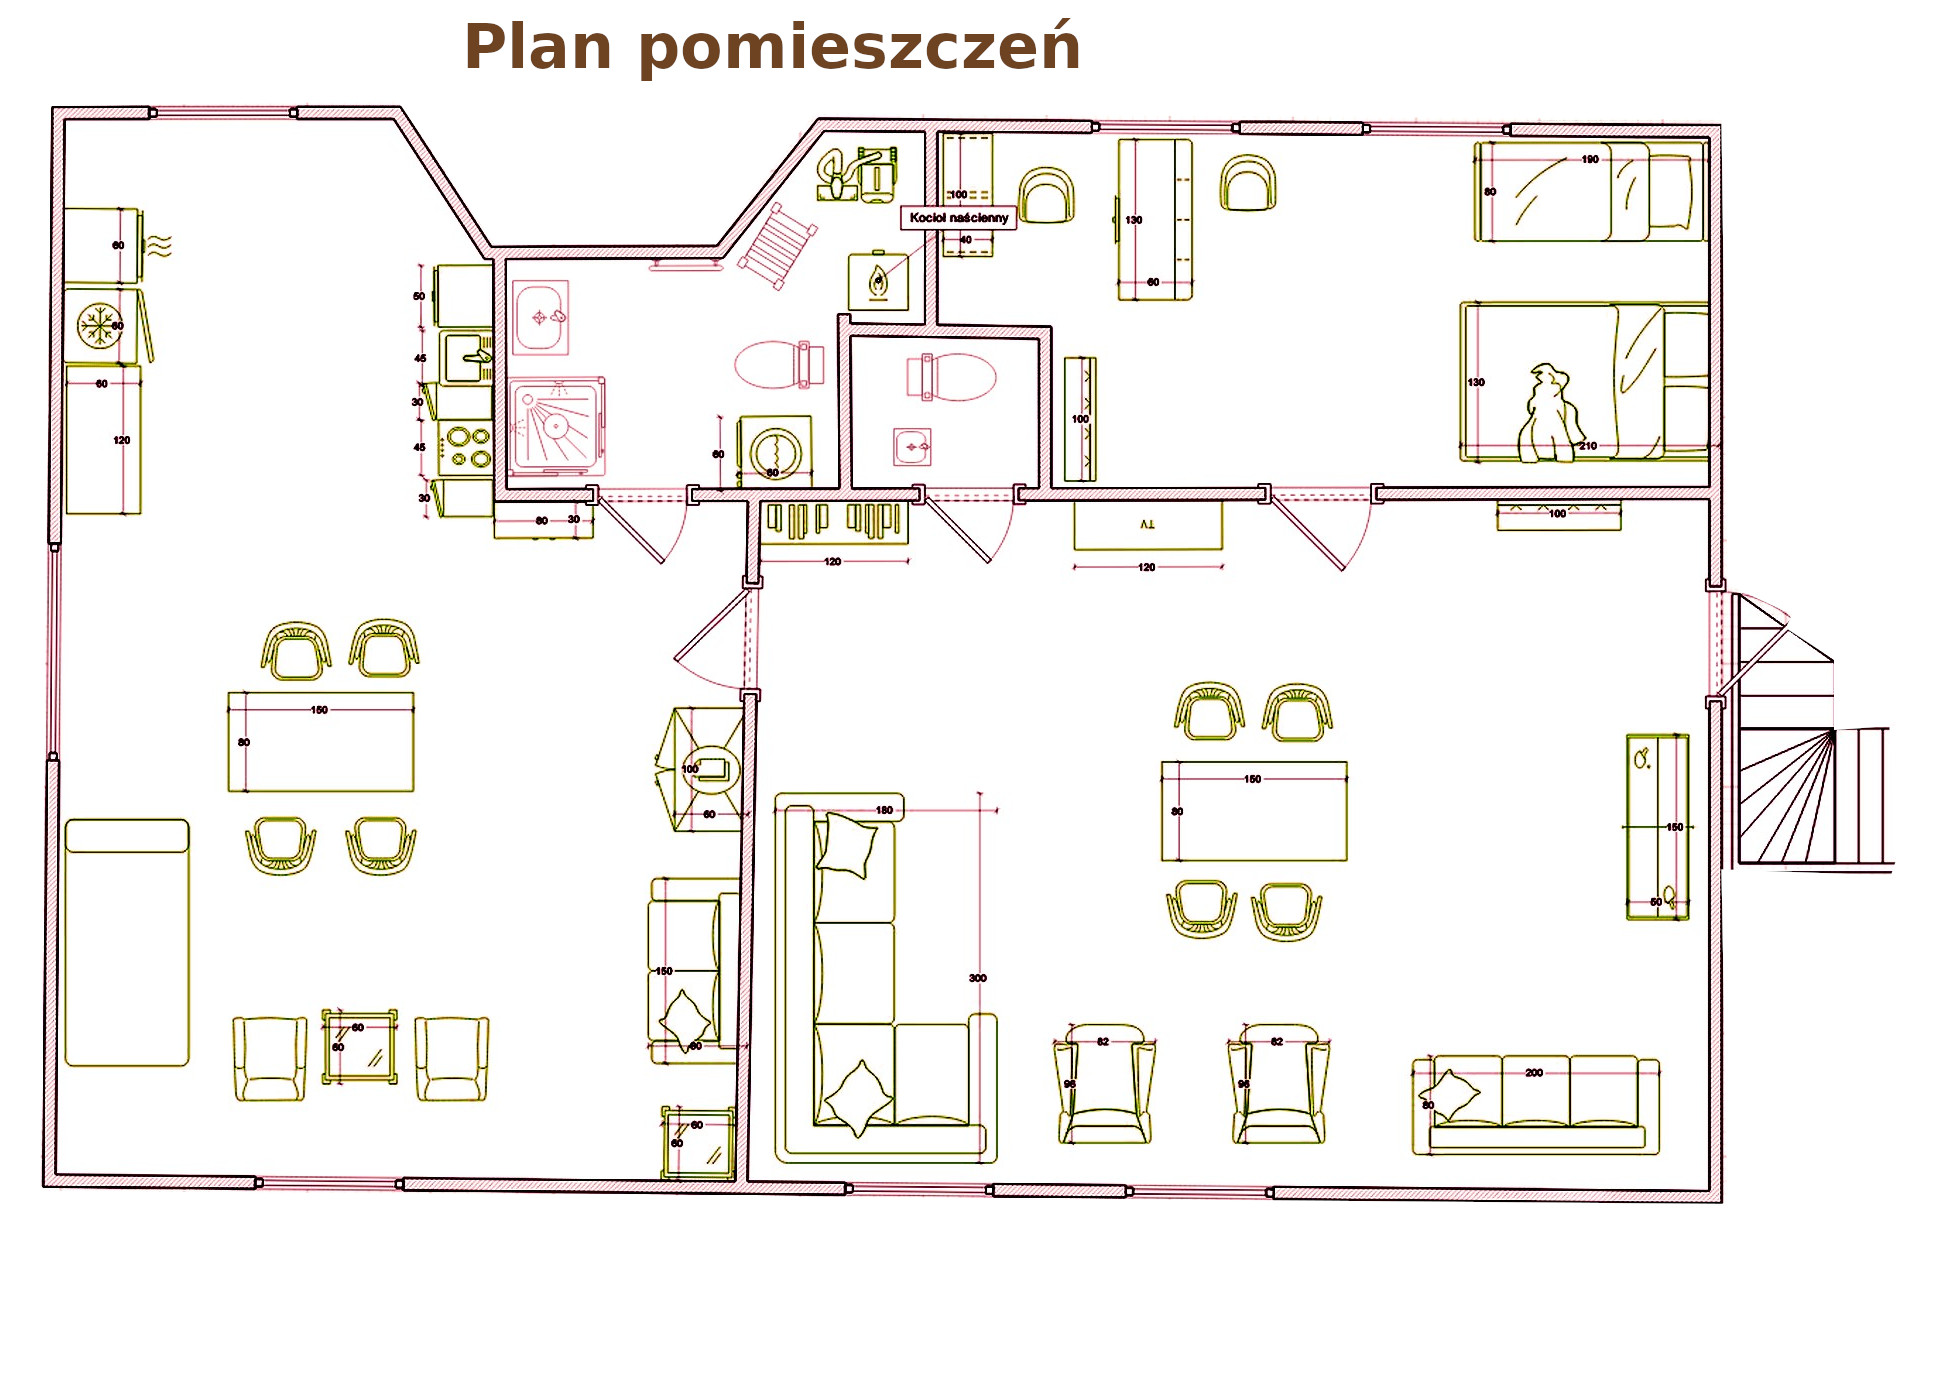 Plan pomieszczeń